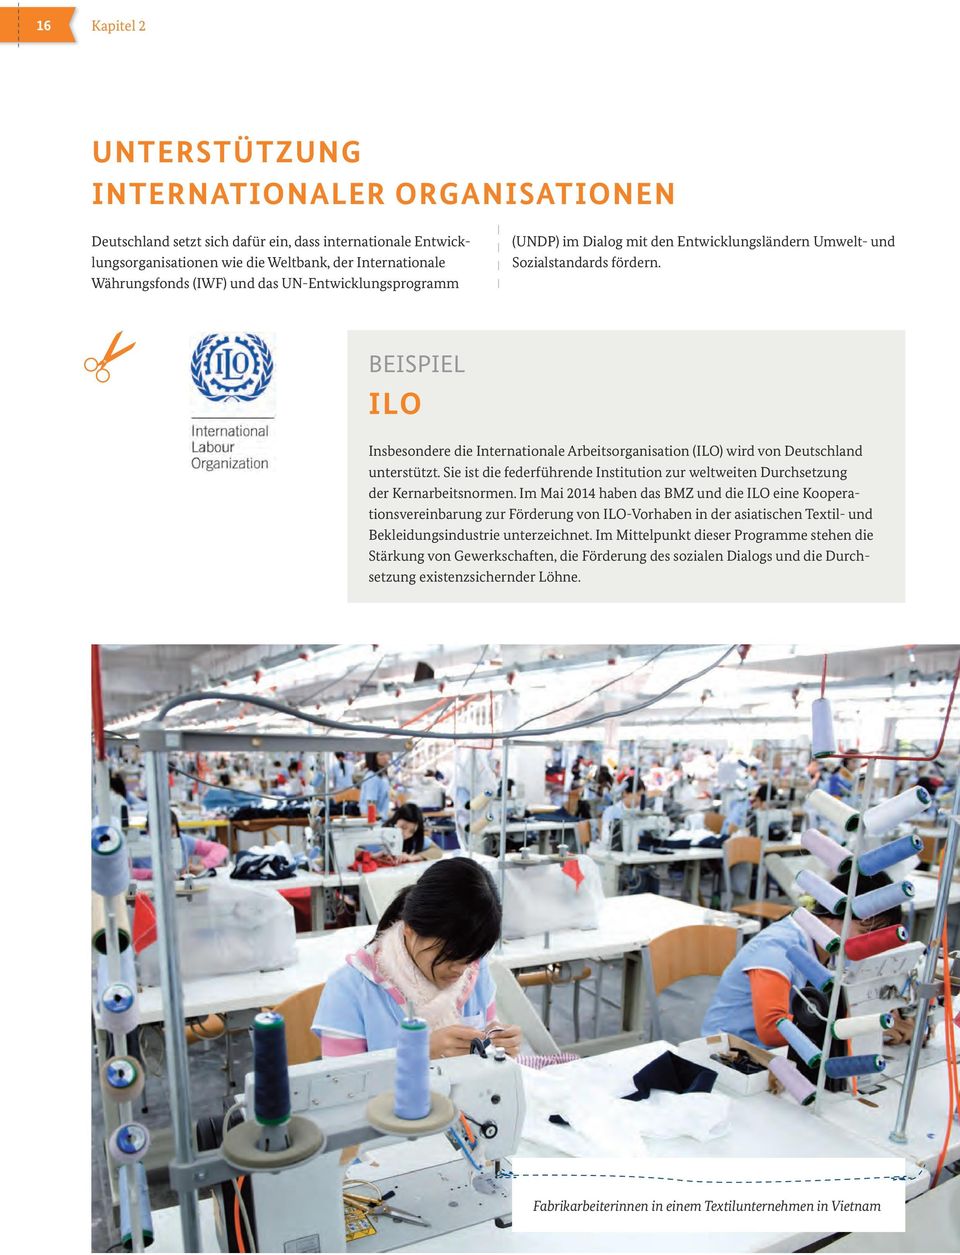 BEISPIEL ILO Insbesondere die Internationale Arbeitsorganisation (ILO) wird von Deutschland unterstützt. Sie ist die federführende Institution zur weltweiten Durchsetzung der Kernarbeitsnormen.